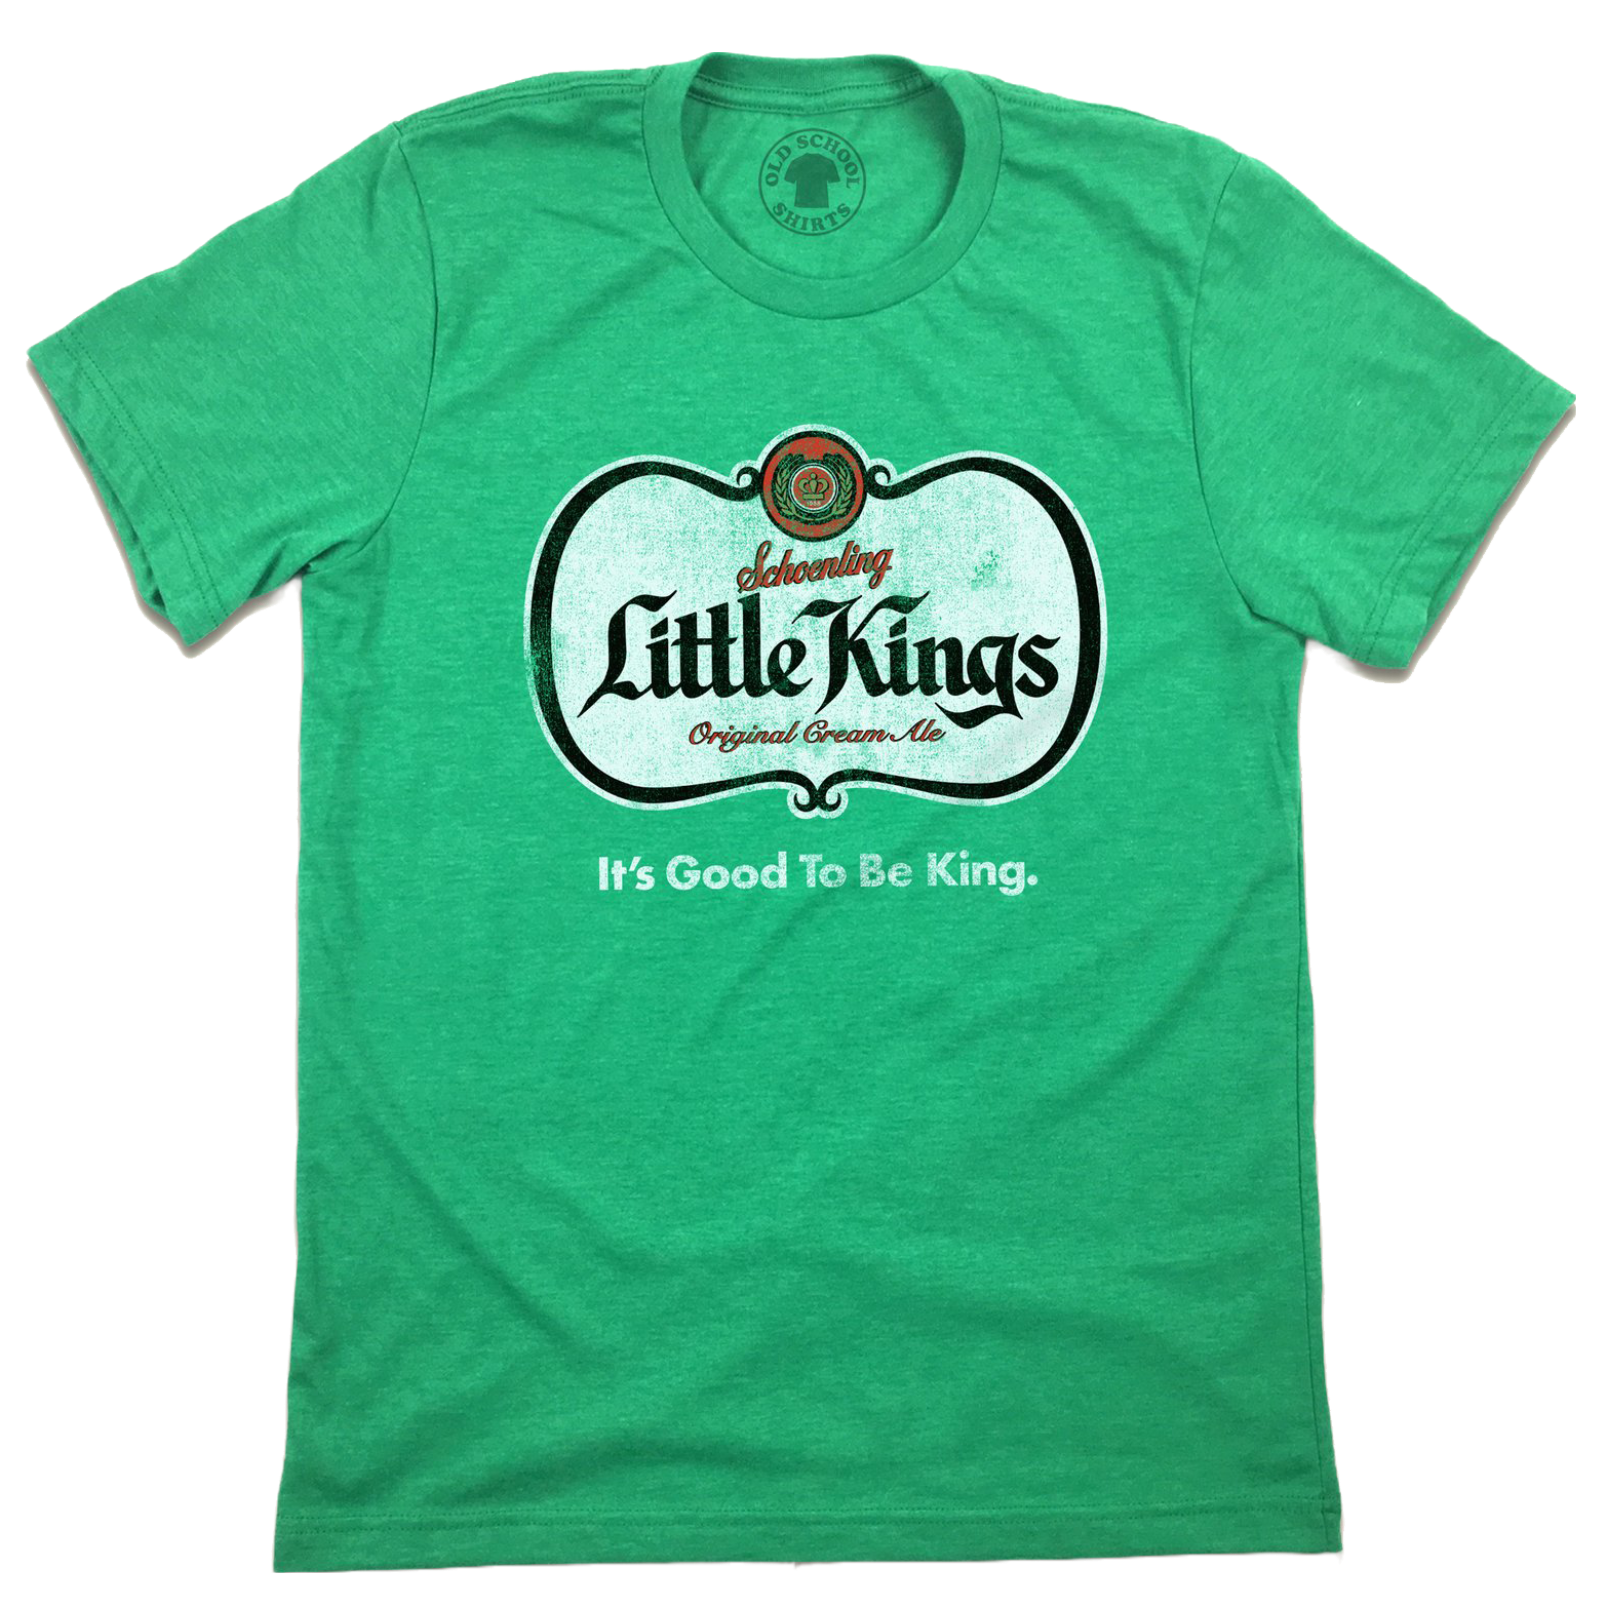 Oakland Athletics Women Top Small Green T-Shirt Logo A's